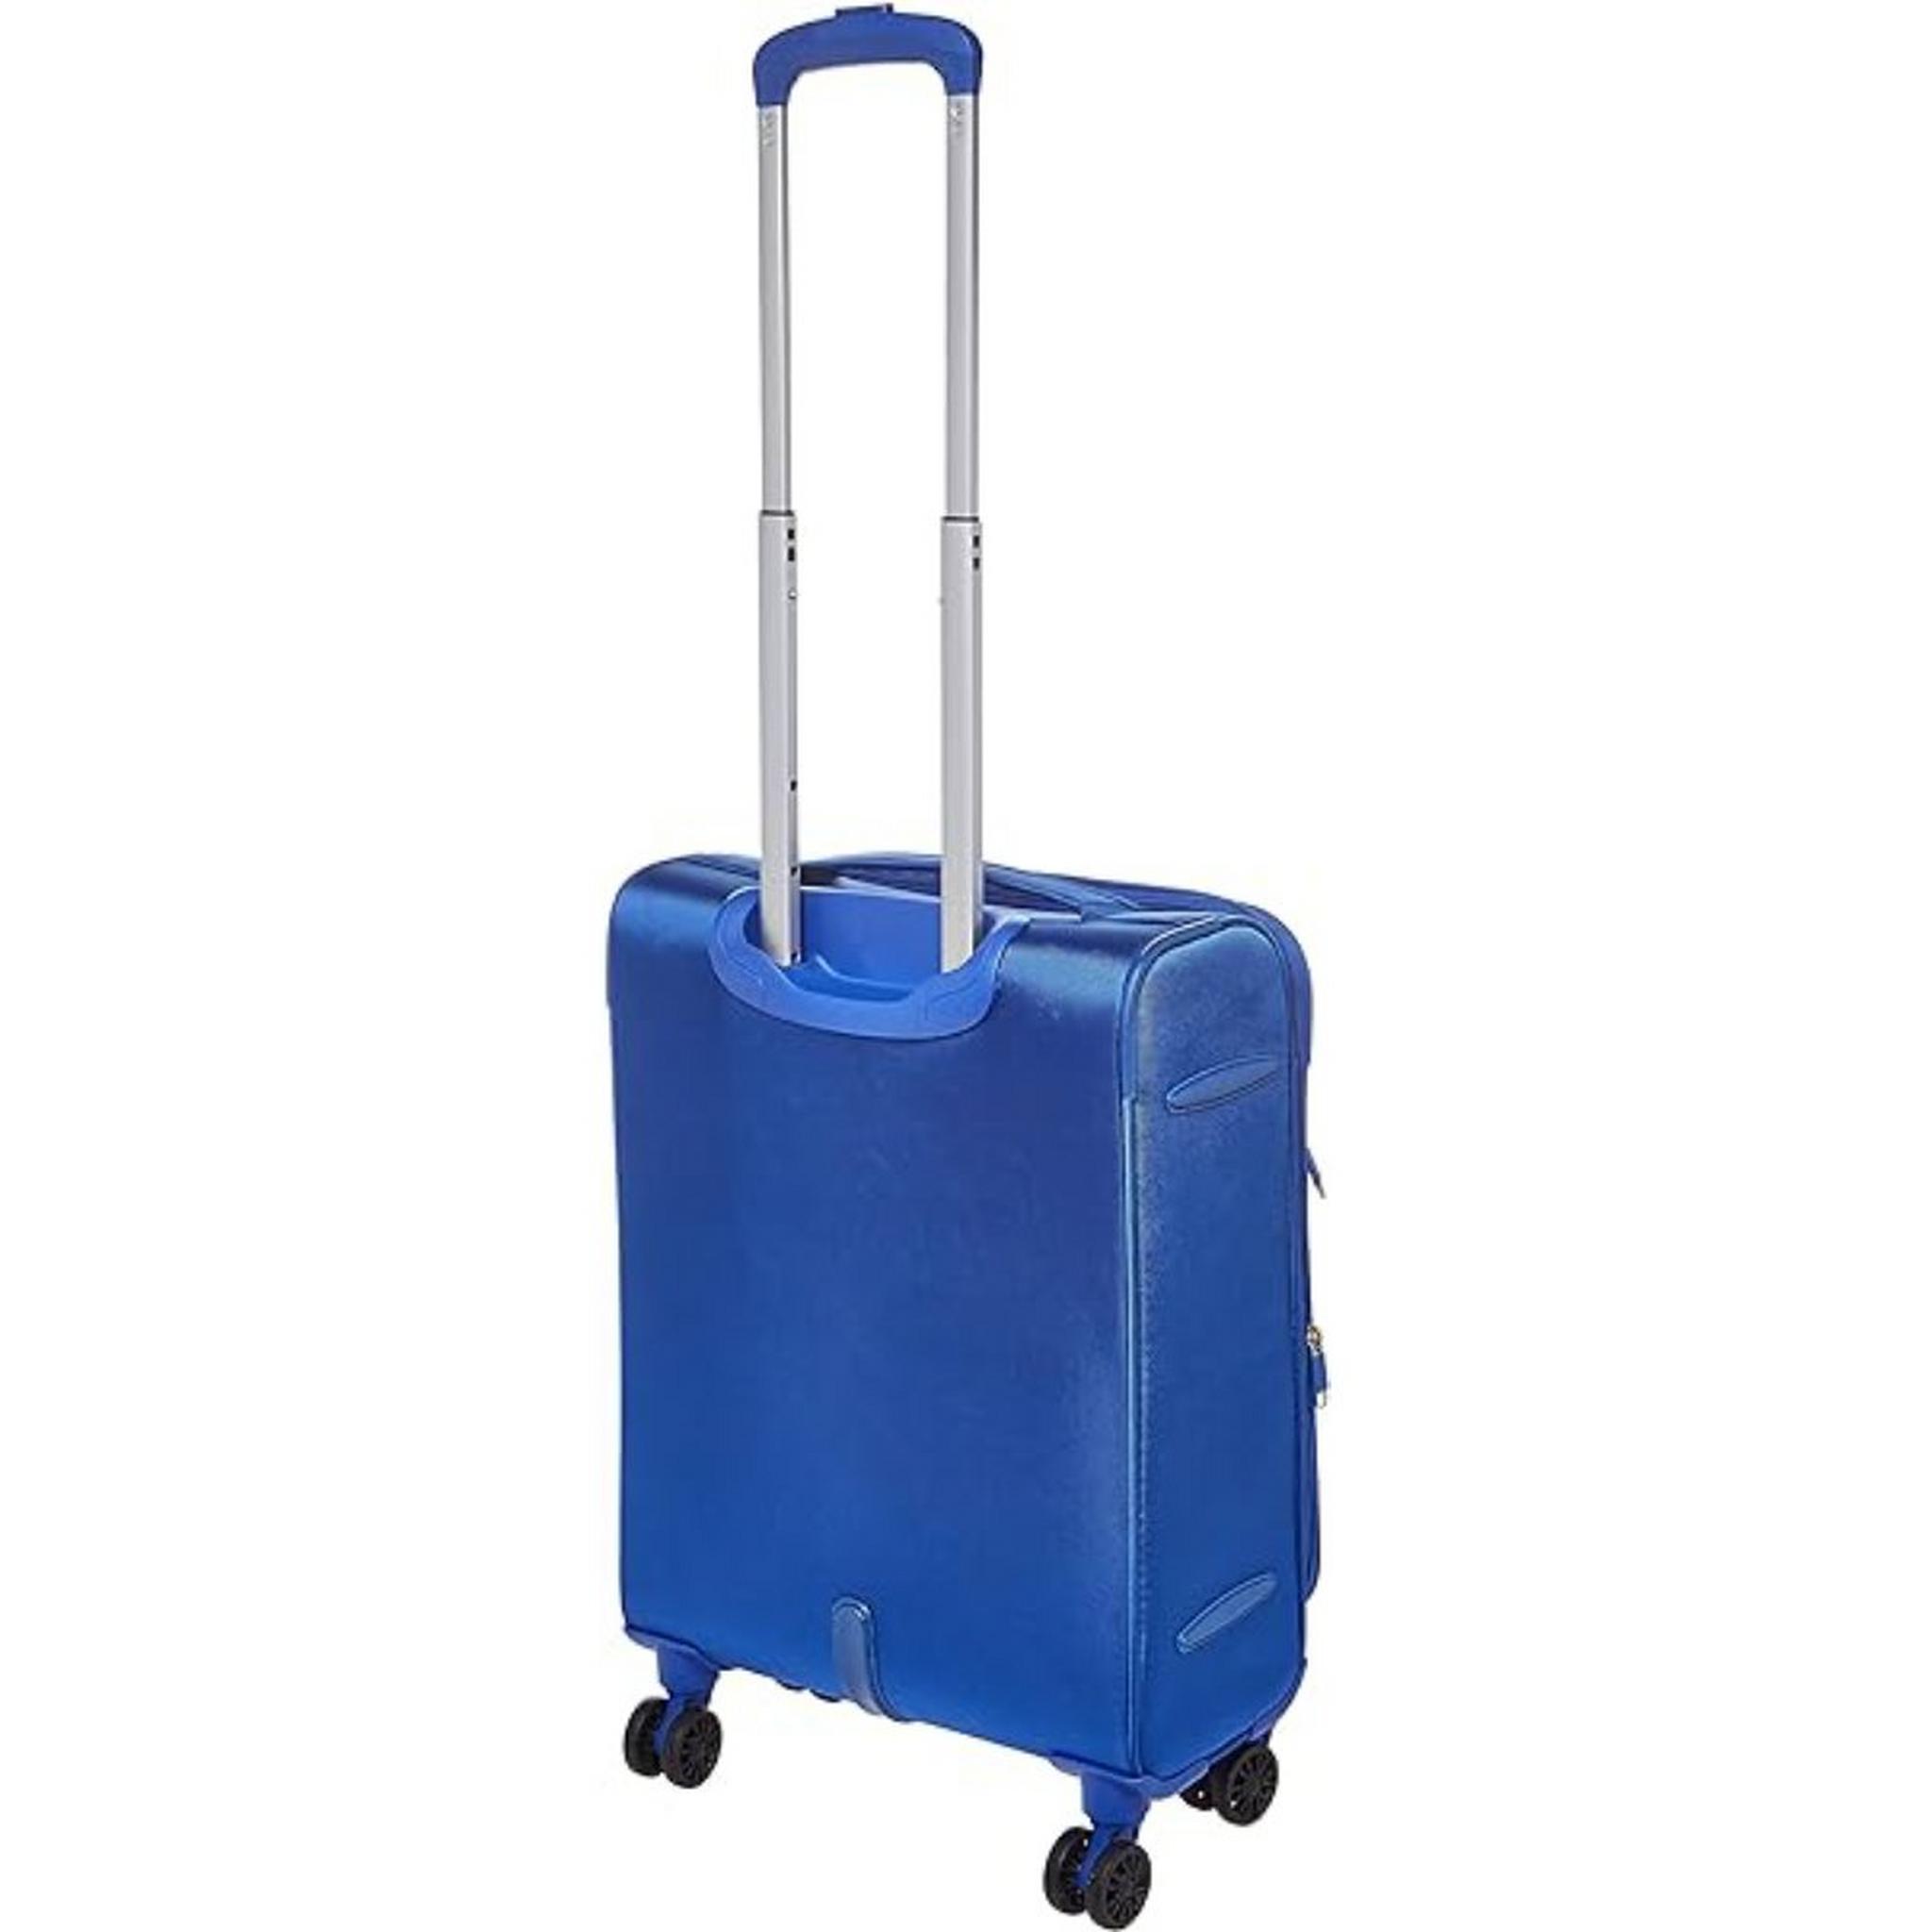 حقيبة سفر ماجوريس بجوانب ناعمة وعجلات دوارة من  أمريكان توريستر (3 قطع)، 59+70+81 سم، LE1X01007– أزرق